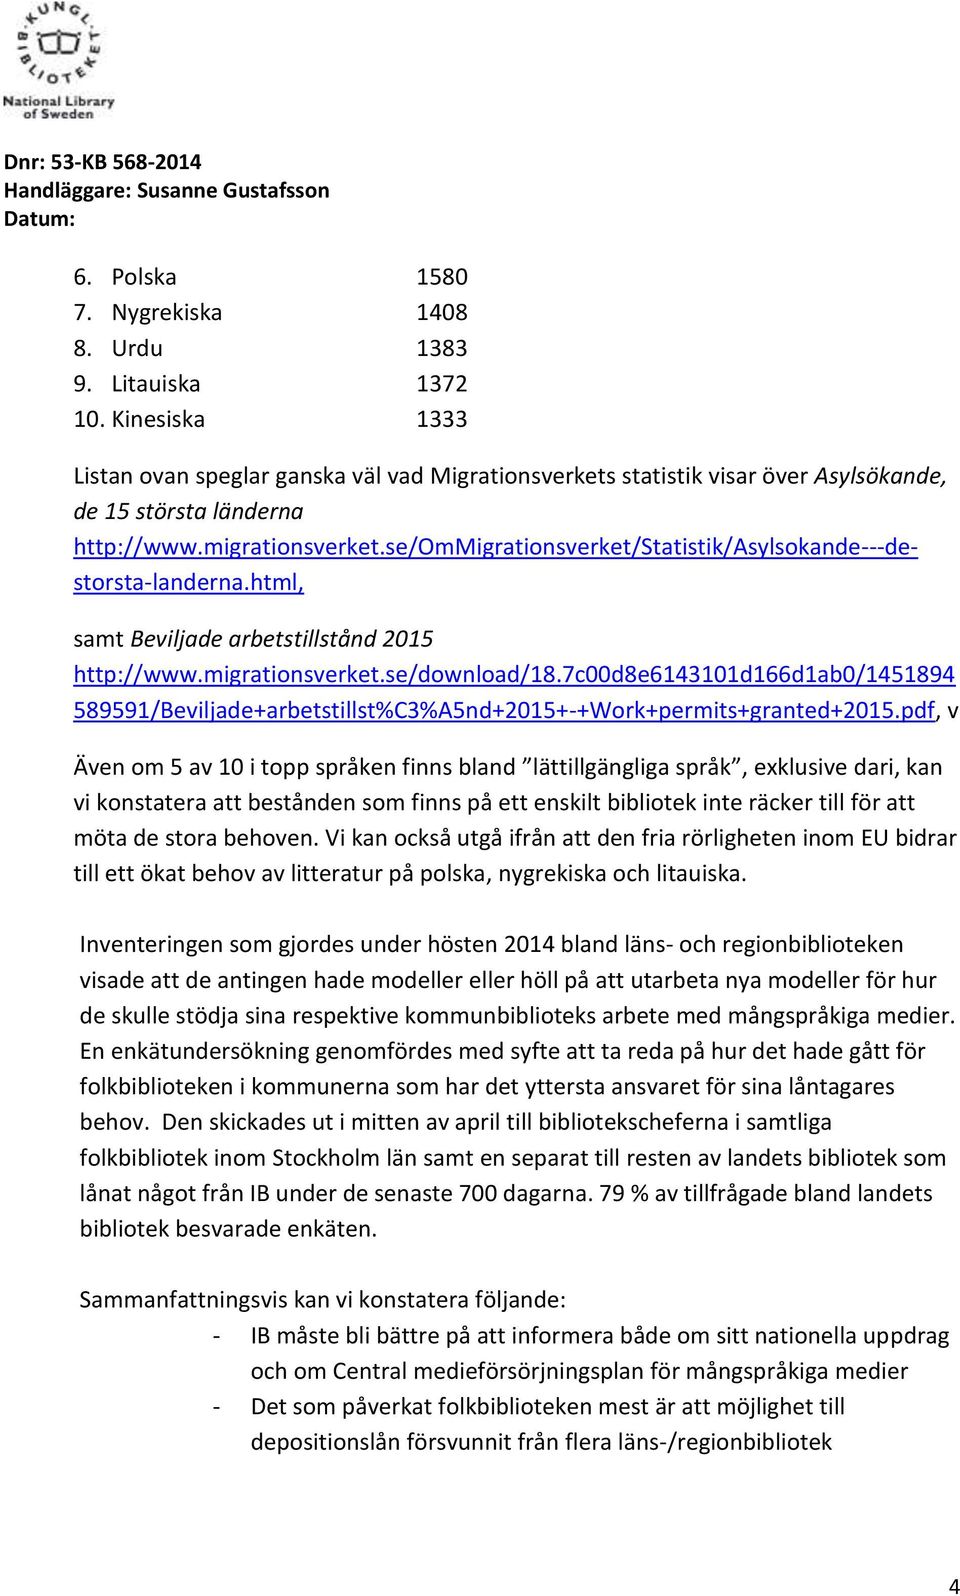 se/ommigrationsverket/statistik/asylsokande---destorsta-landerna.html, samt Beviljade arbetstillstånd 2015 http://www.migrationsverket.se/download/18.